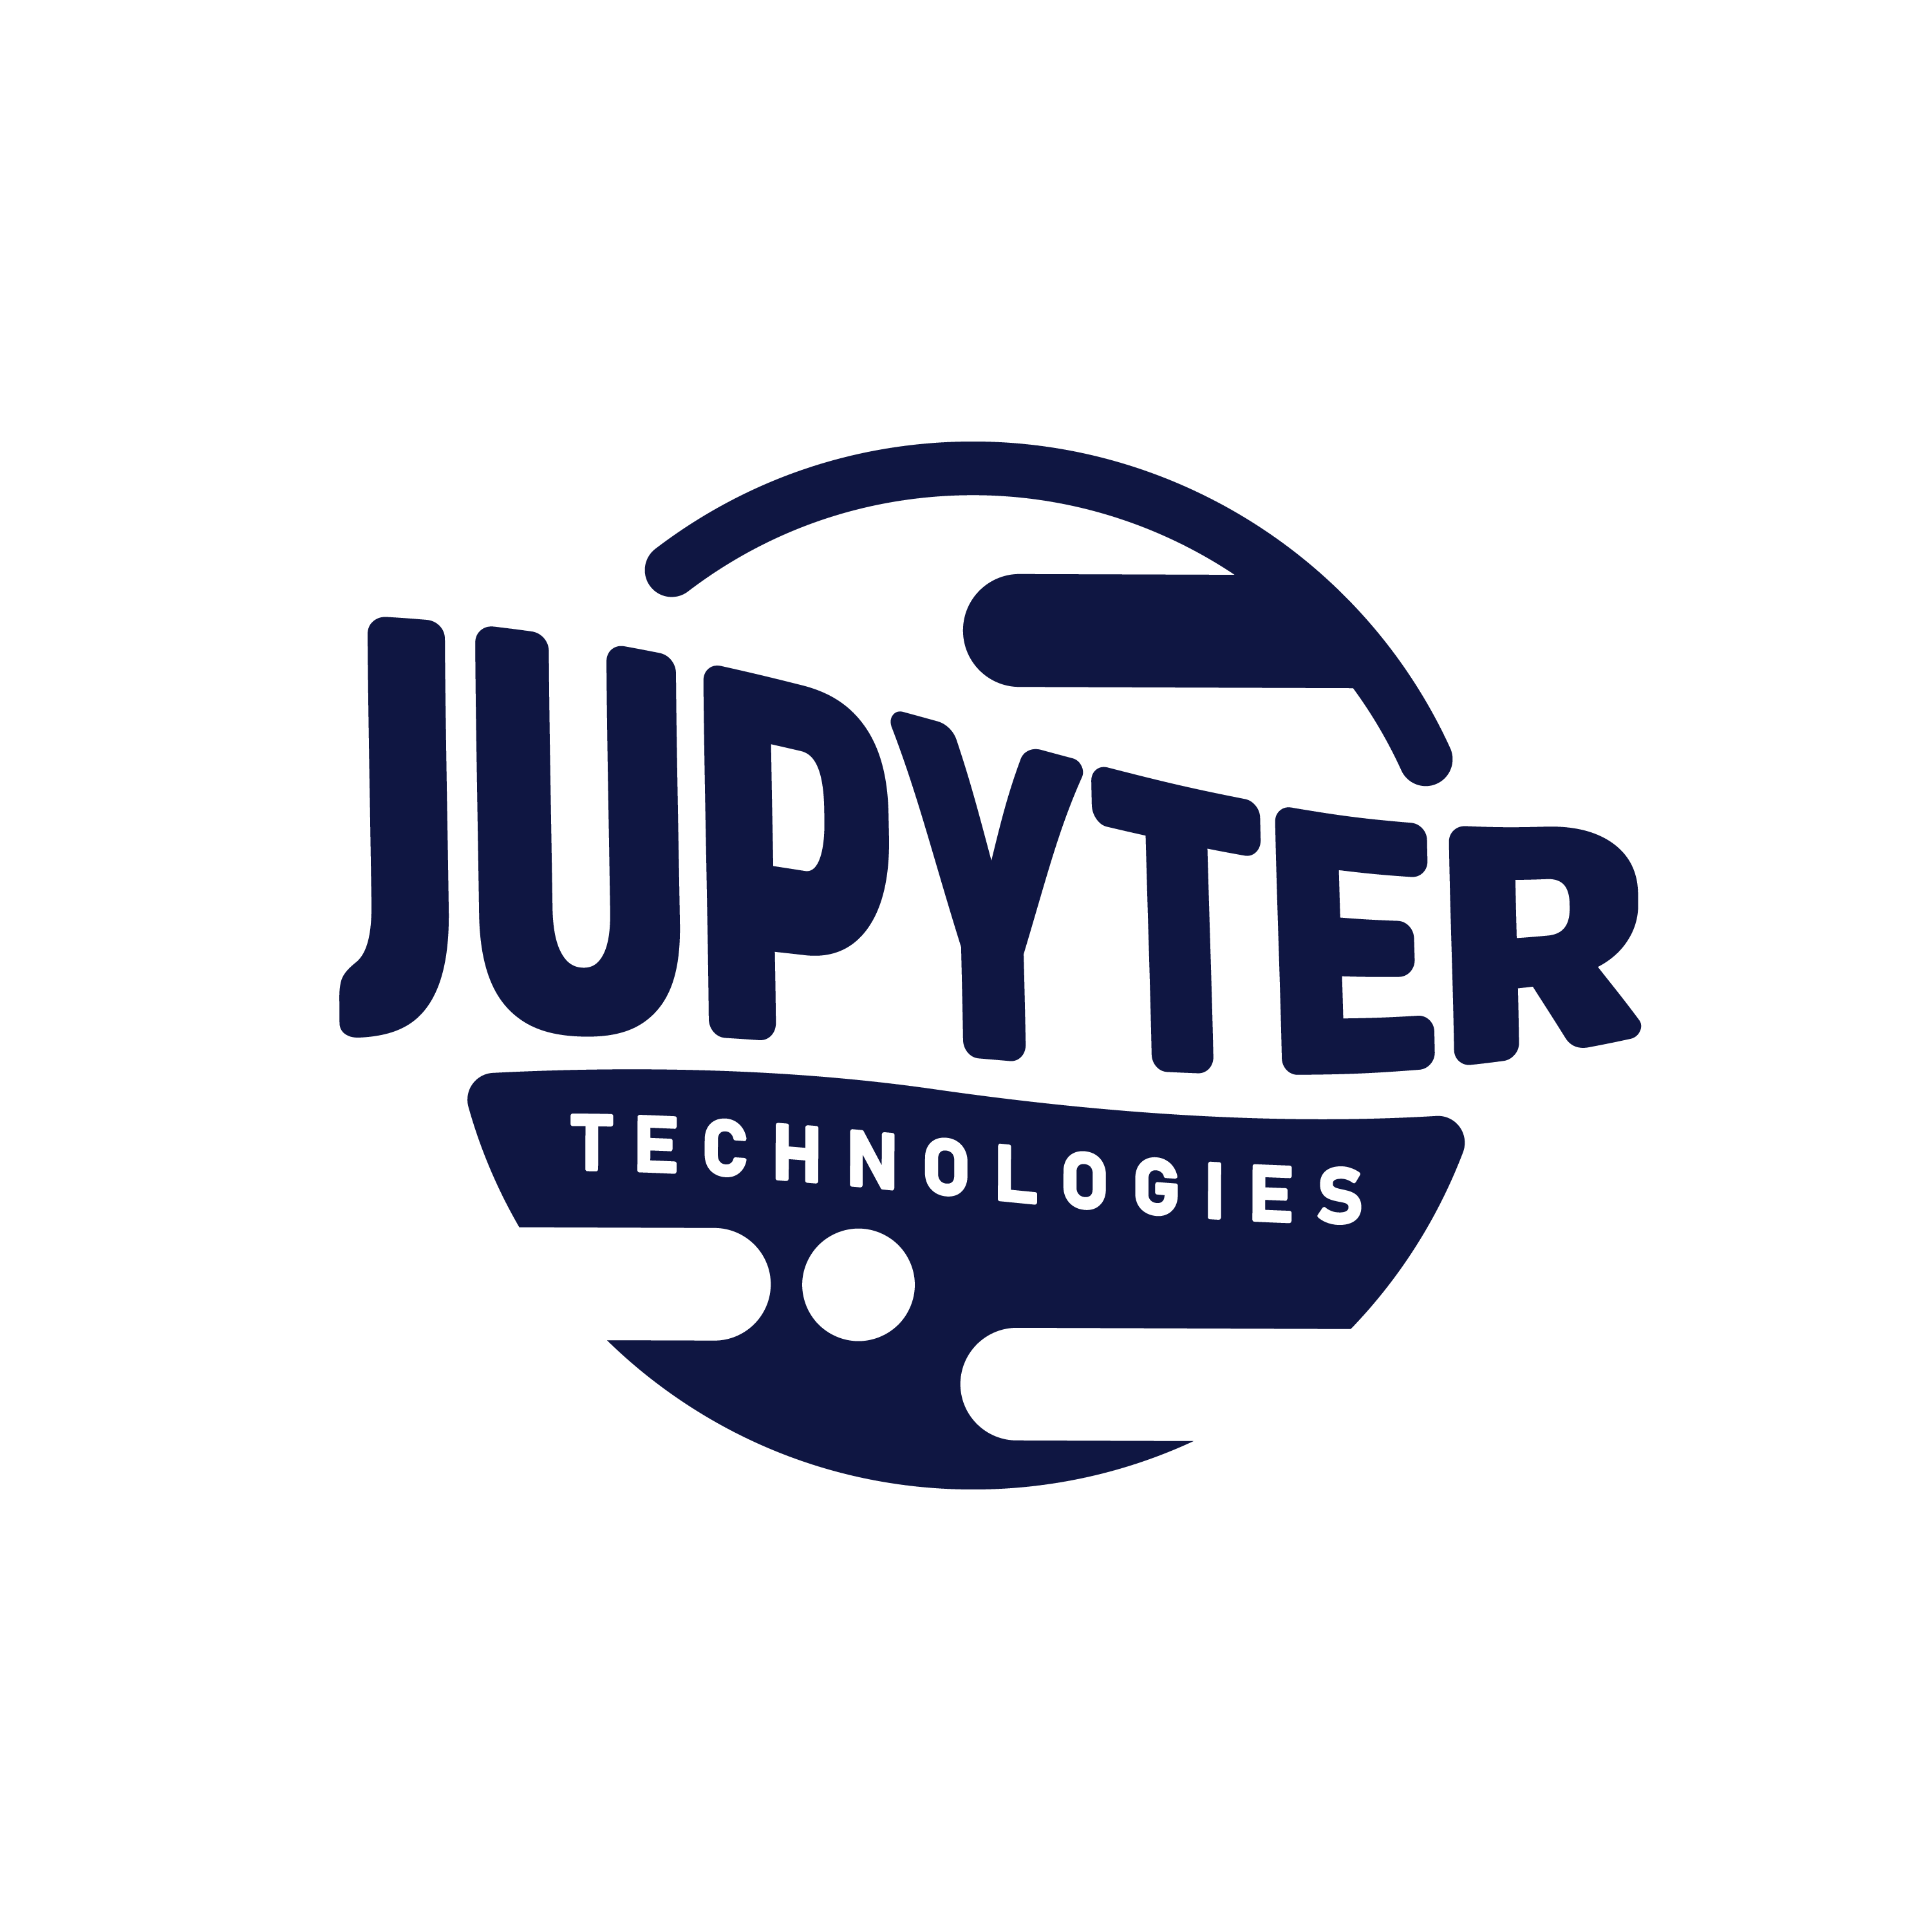 Jupyter Technologies